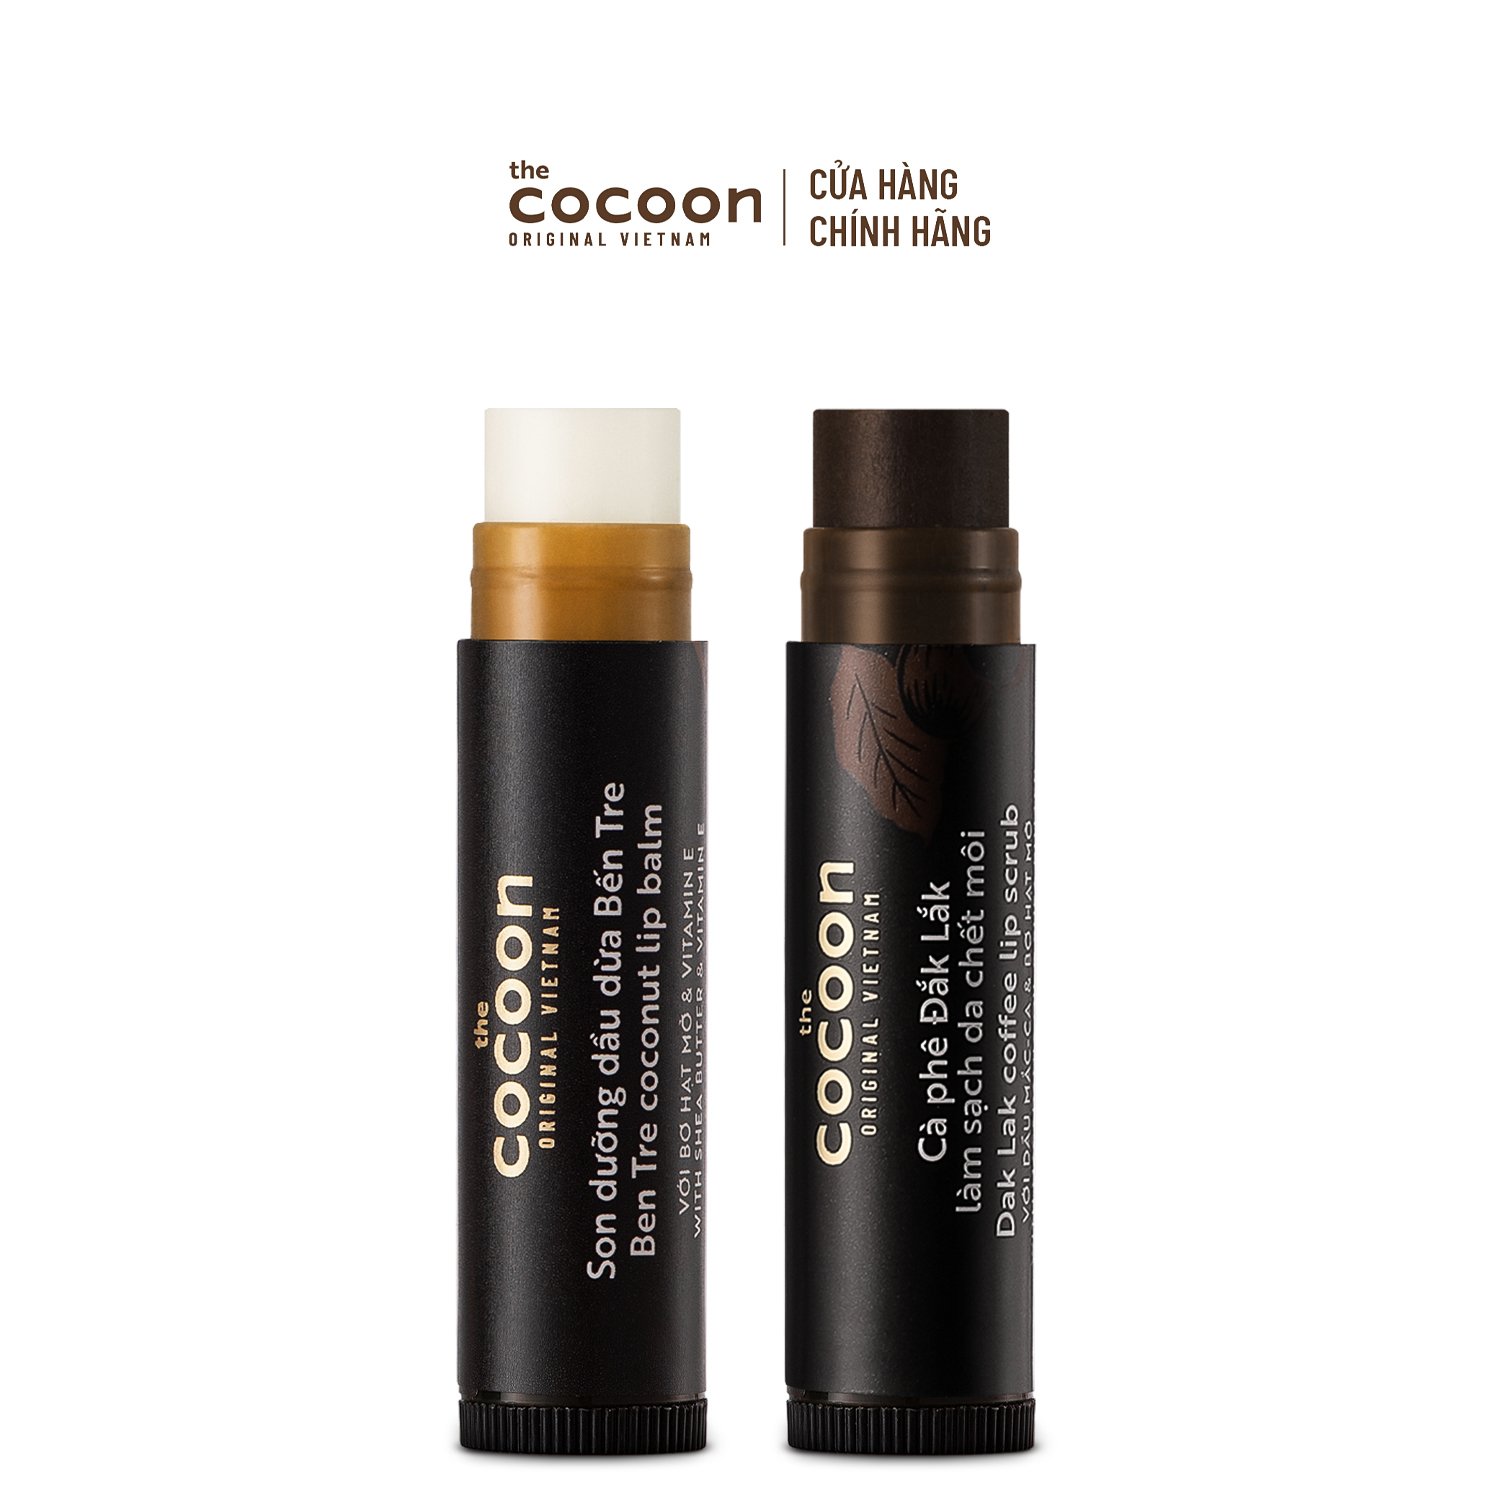 Combo Cà phê Đắk Lắk làm sạch da chết môi Cocoon 5g + Son dưỡng dầu dừa